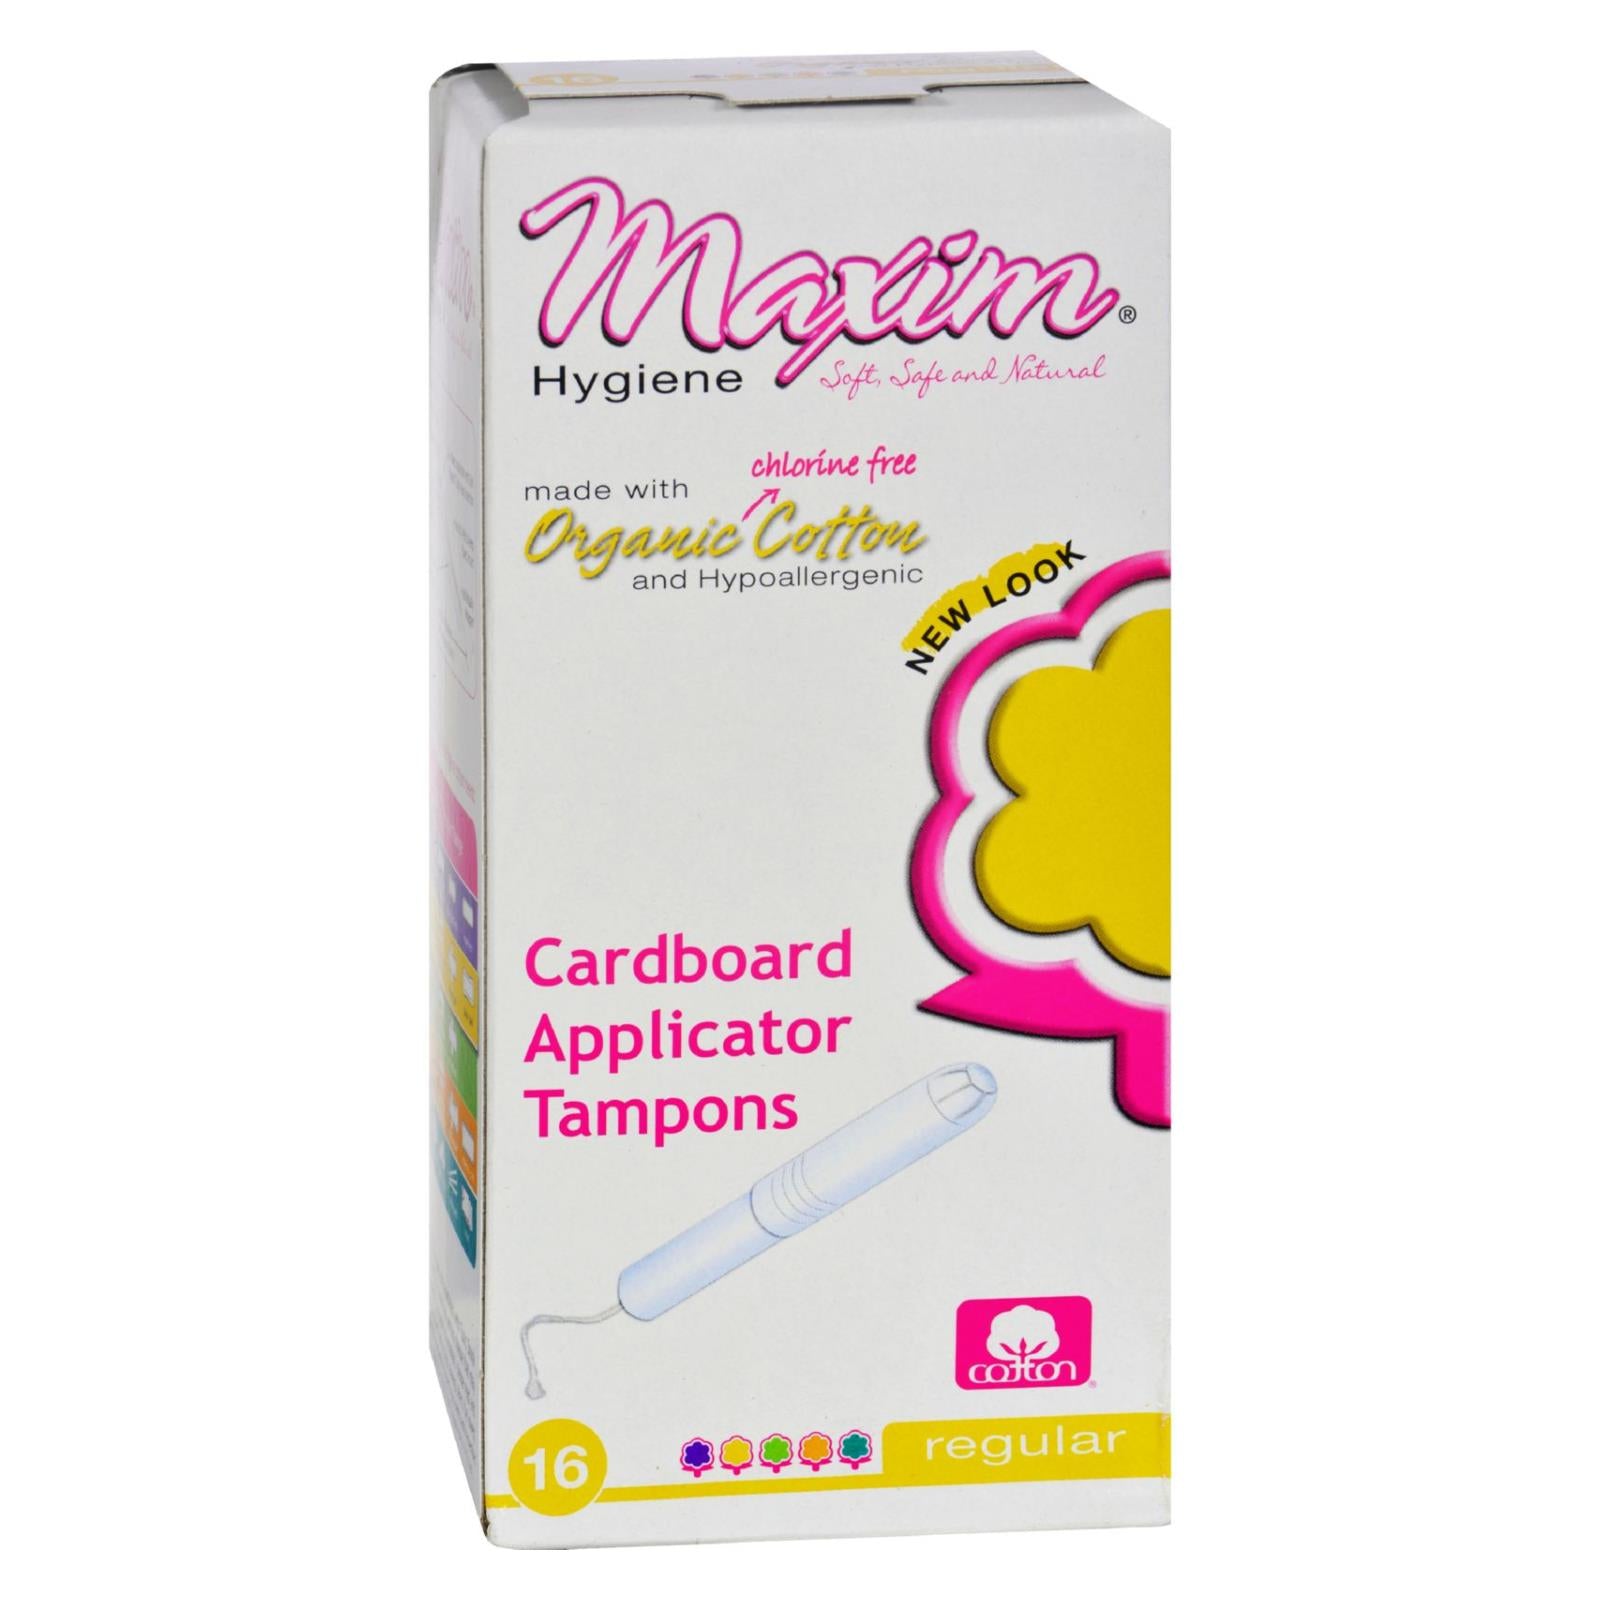 Produits d'hygiène Maxim, Maxim Hygiene - Tampons applicateurs en carton en coton biologique - 16 Tampons